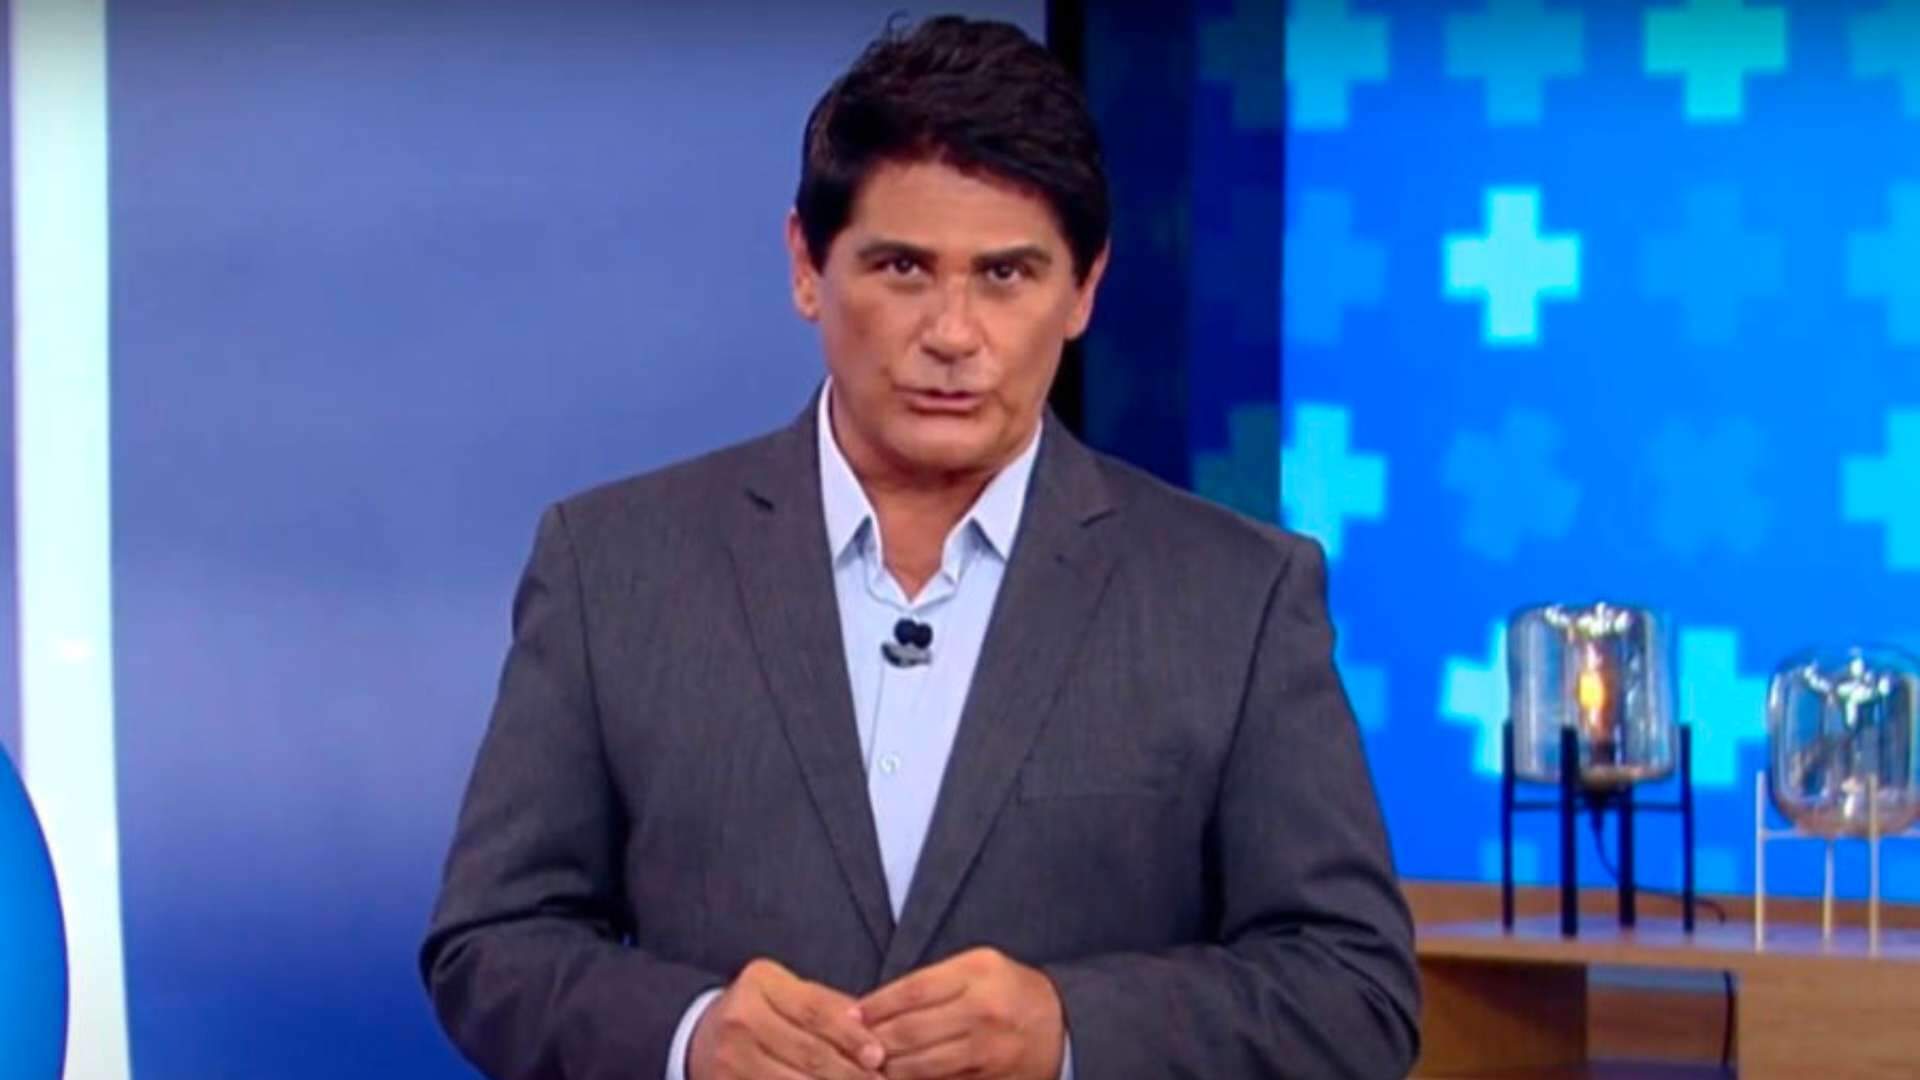 Ao vivo no ‘Hoje em Dia’, César Filho fica chocado ao noticiar prisão de famoso da Globo: “Não é possível”